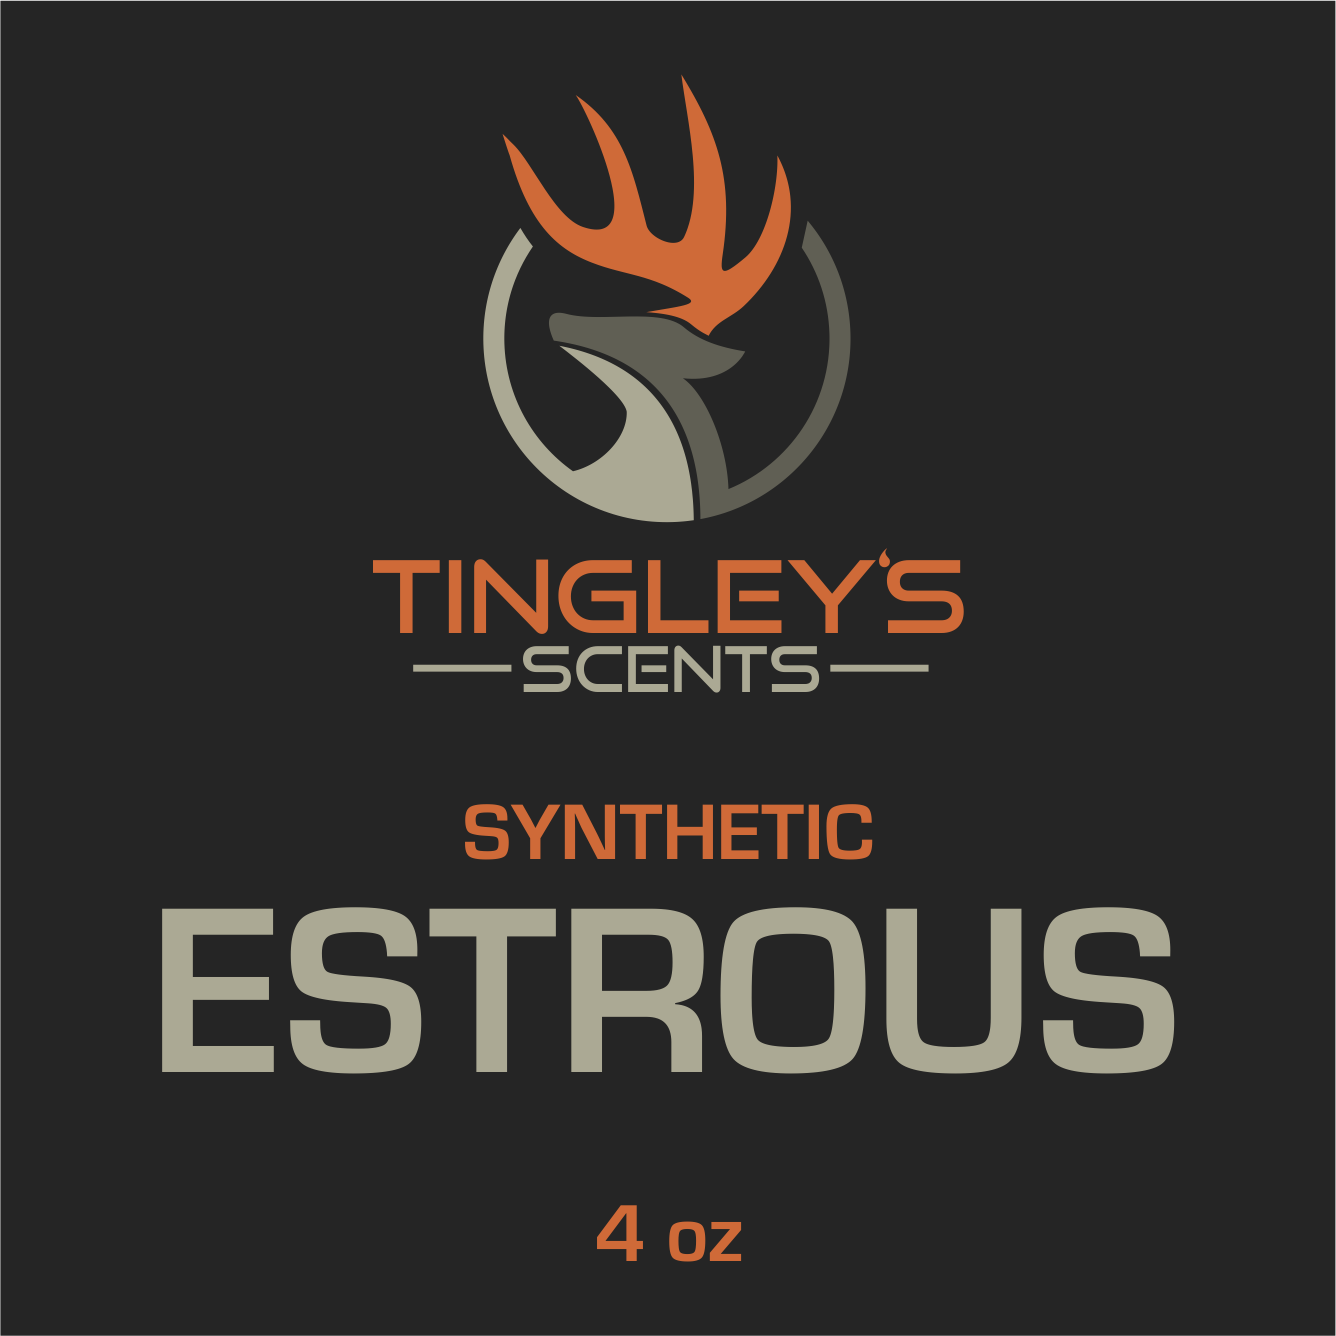 ESTROUS - Synthetic